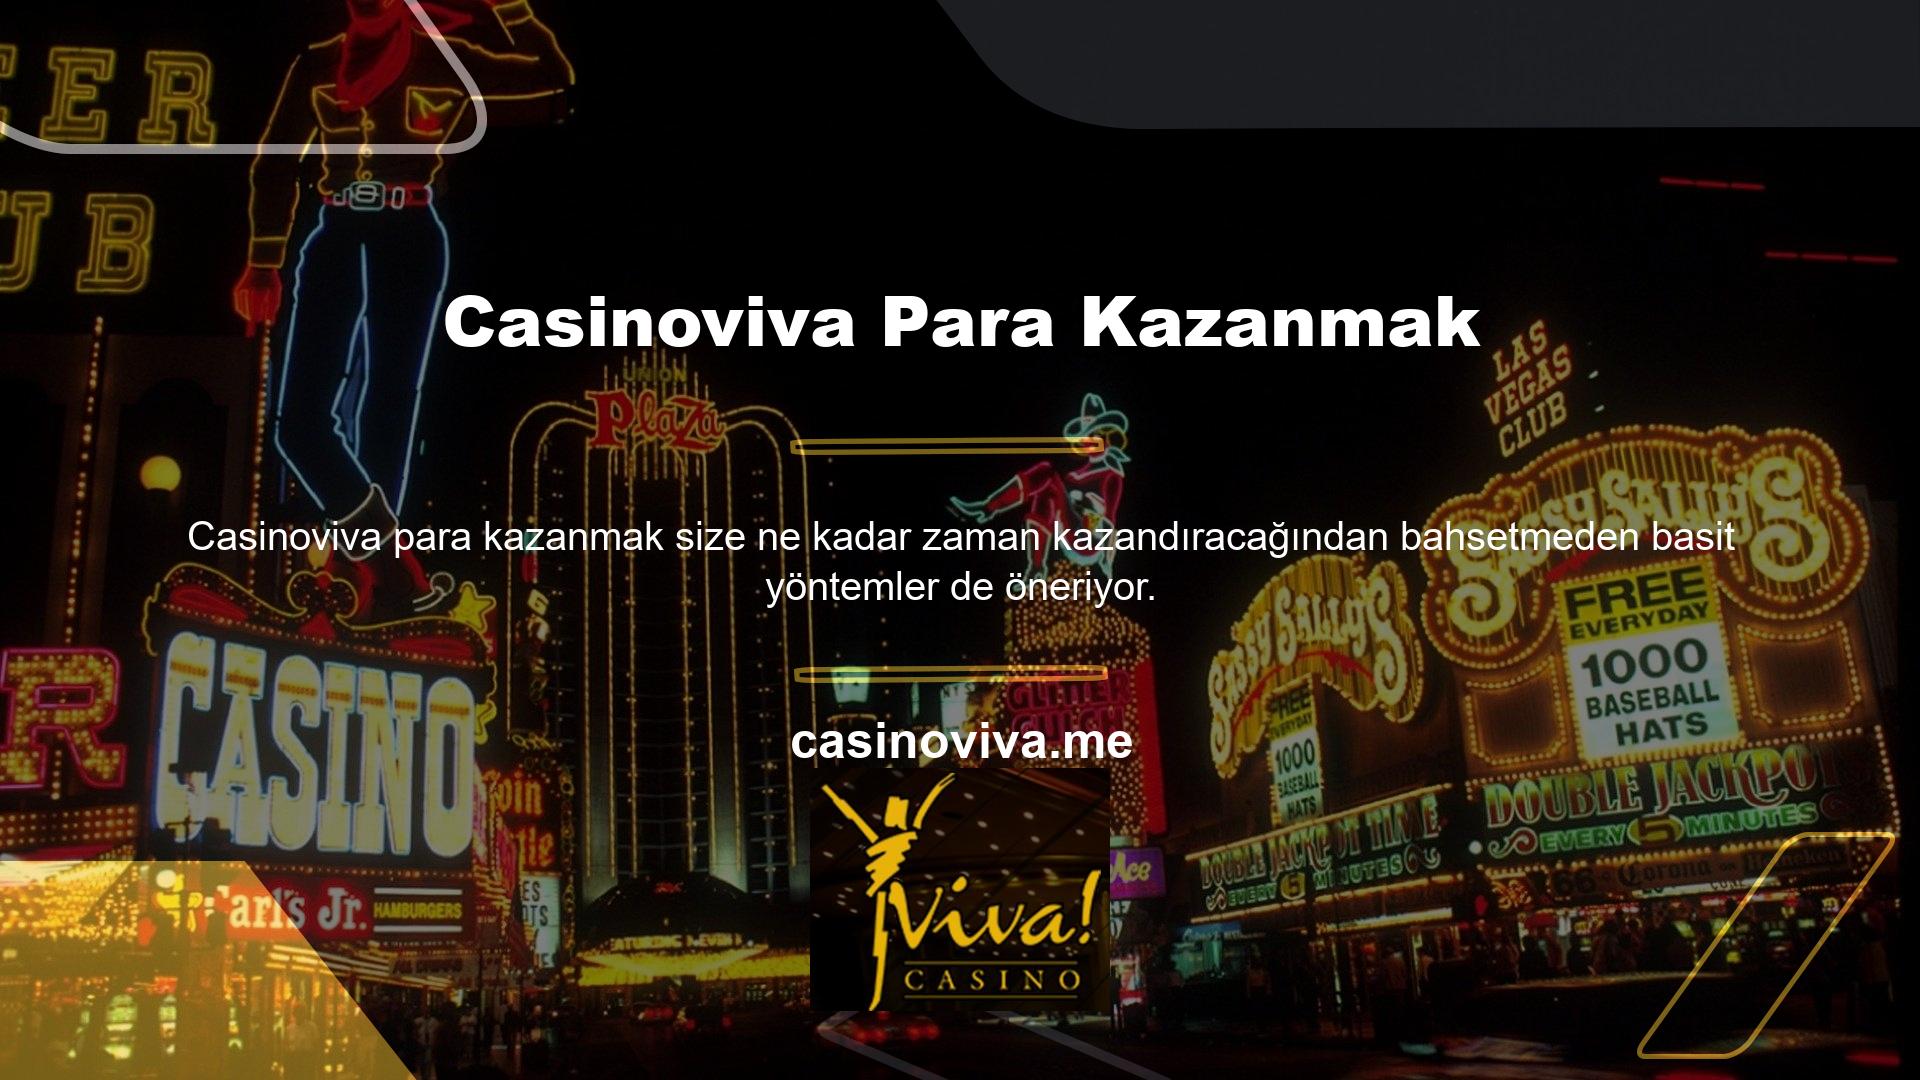 Casinoviva yeni web sitesi ve hizmetlerini tanıtıyor